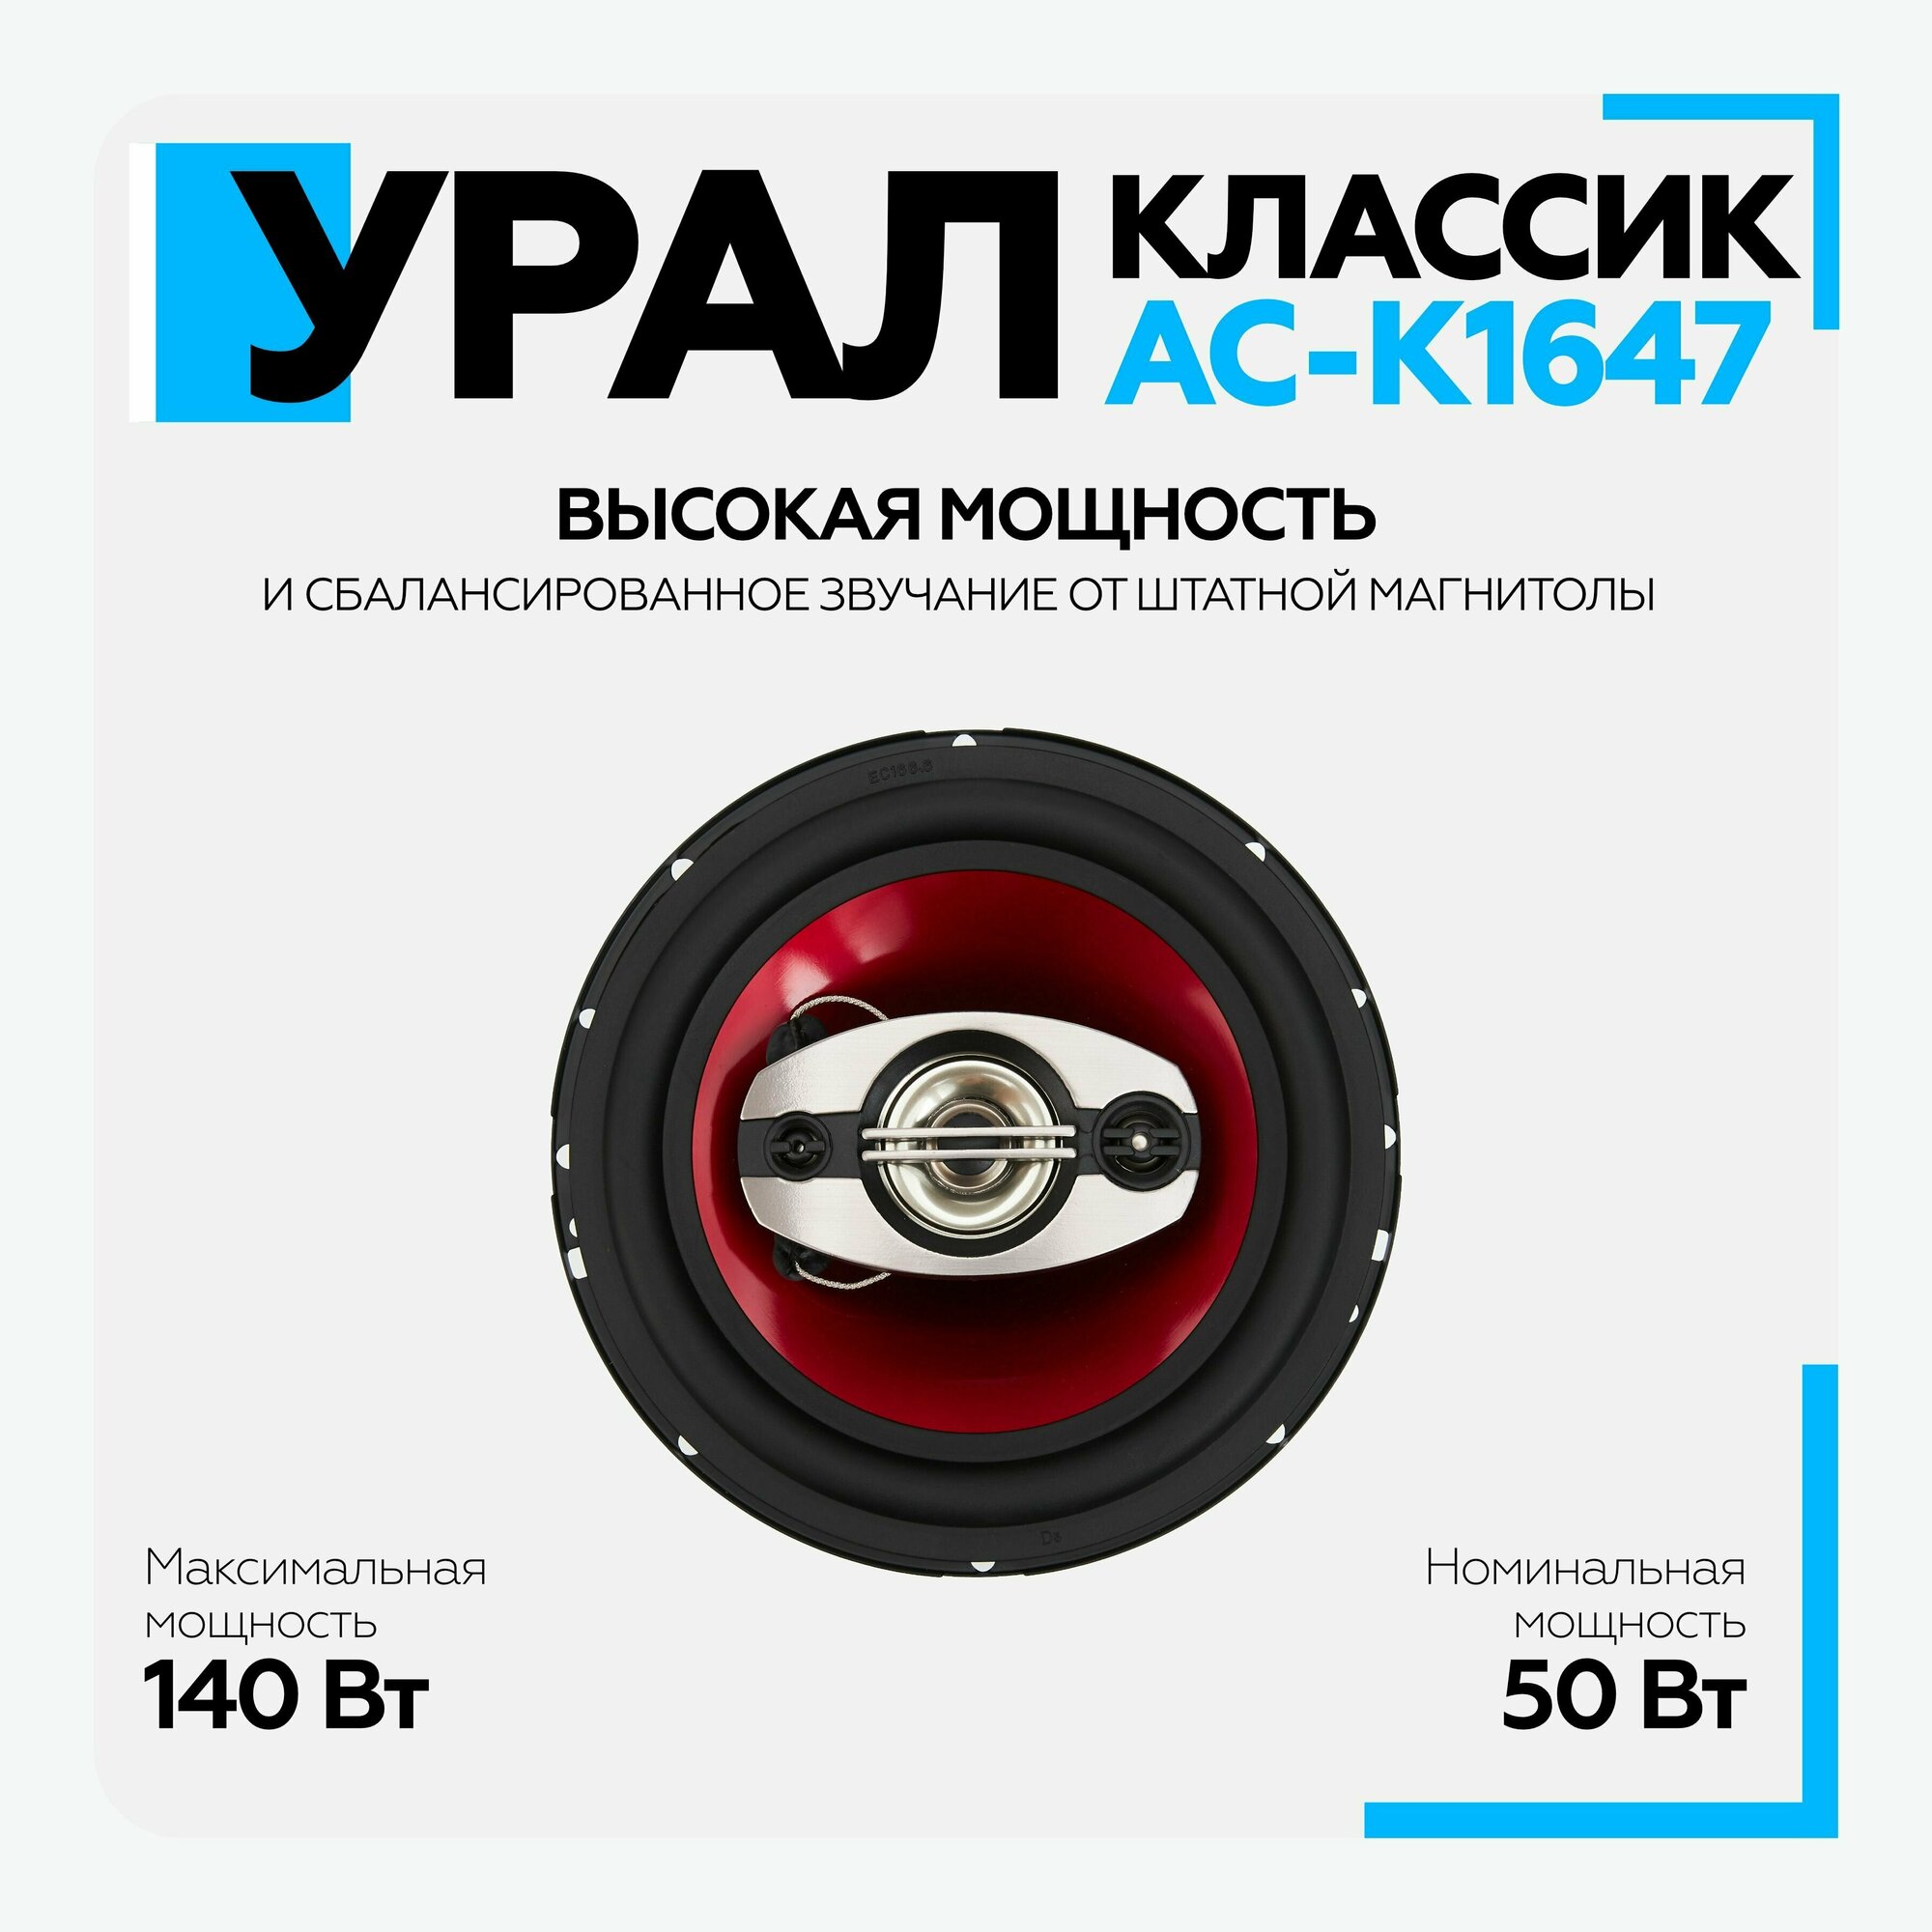 Автомобильные колонки Ural Классик АС-К1647 (урал классик ас-к1647) - фото №7